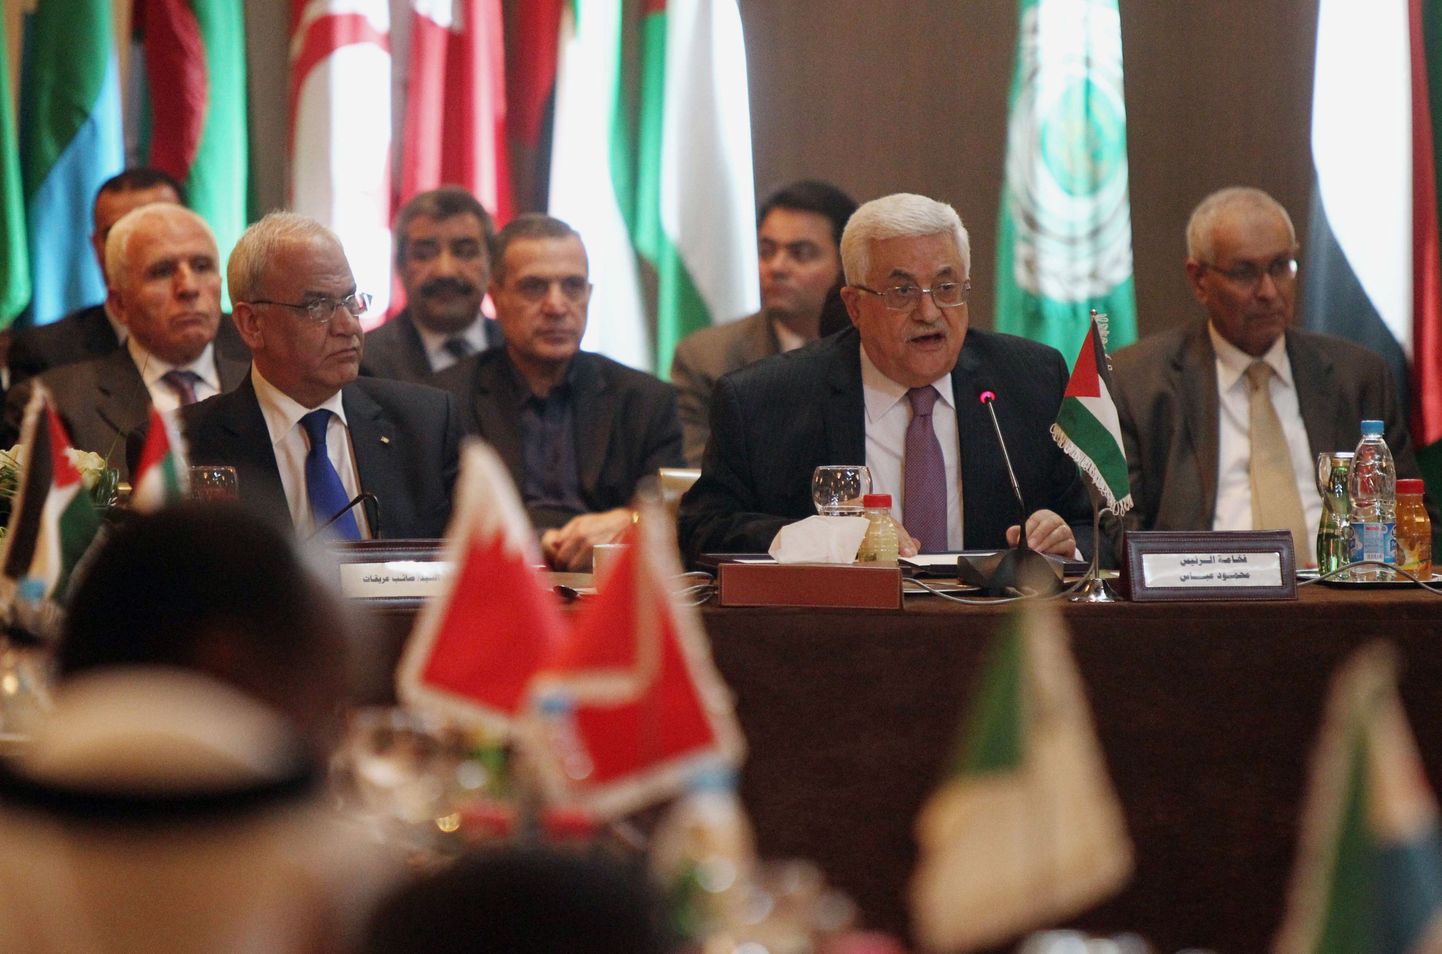 Palestiina president Mahmoud Abbas (ees paremal) ja läbirääkimiste juht Saeb Erakat (vasakul) Araabia Liiga tänasel kohtumisel.